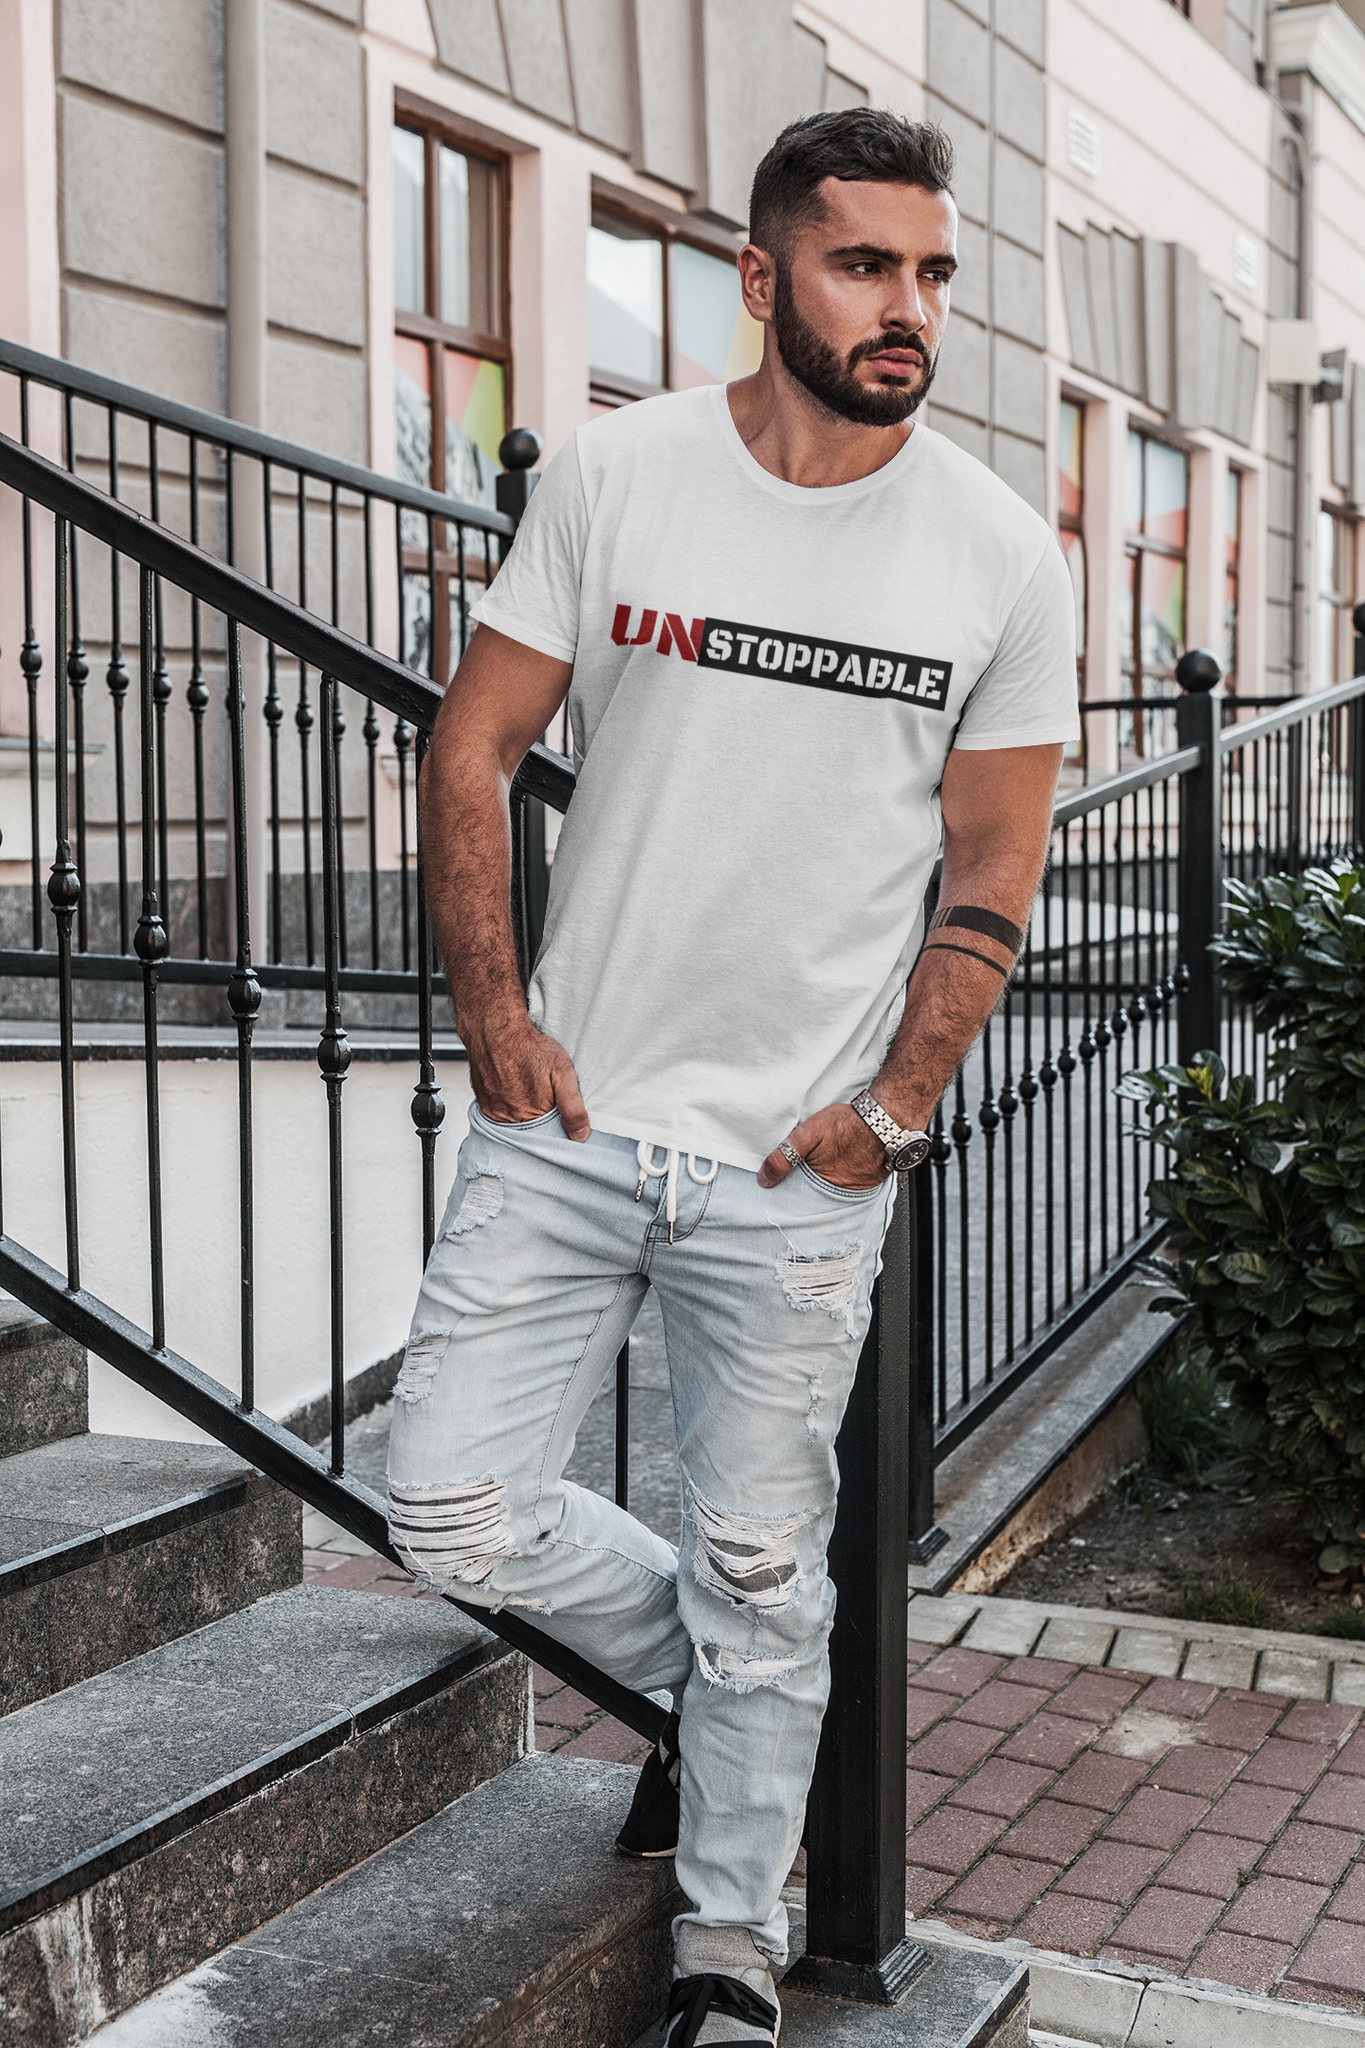 Unstoppable Boss Short-Sleeve Unisex T-Shirt